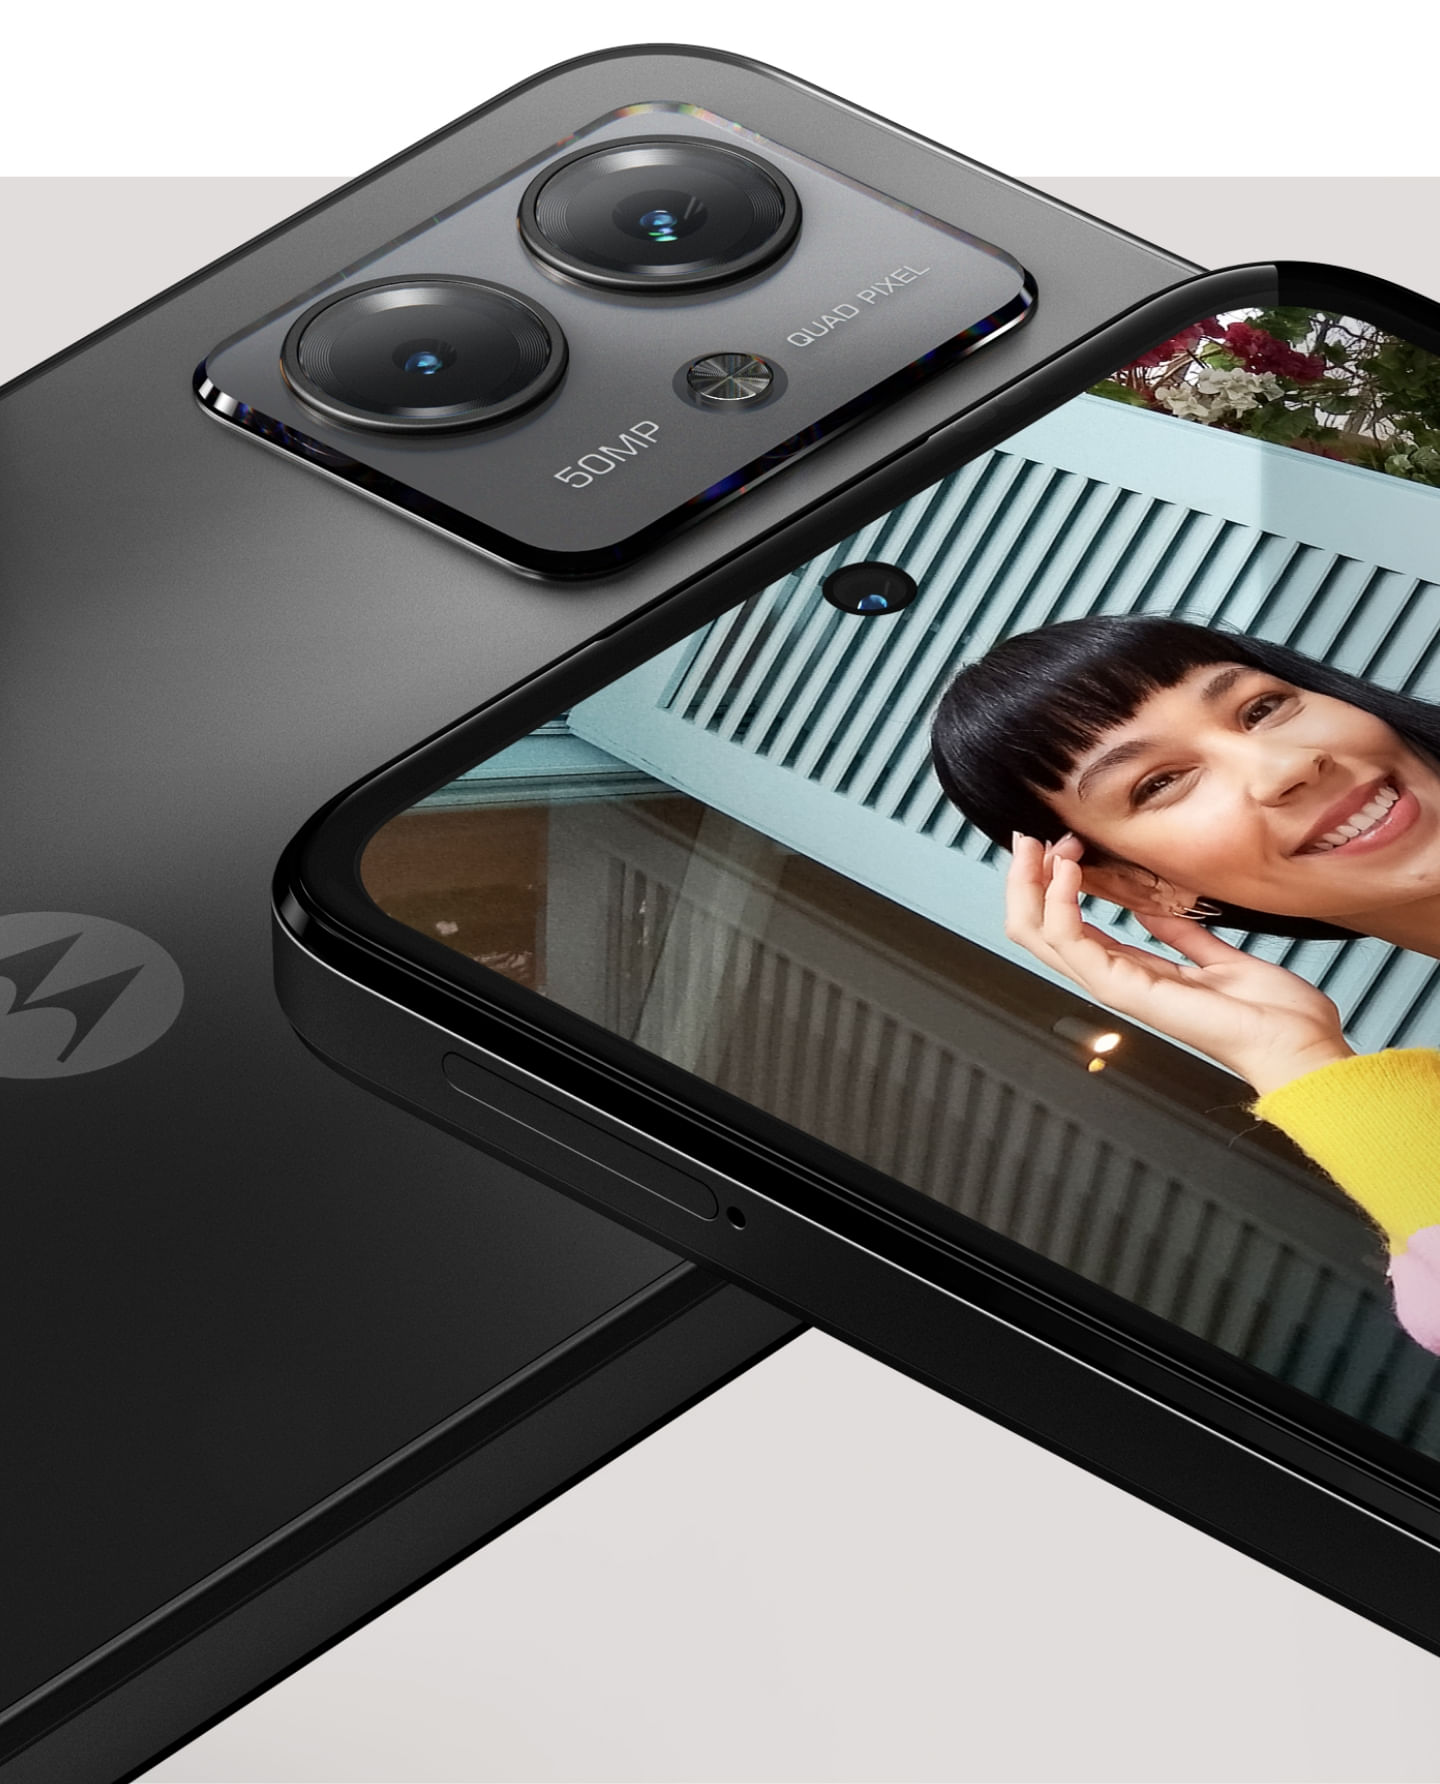 Motorola Moto G14 llega a México, la gama de entrada tiene un nuevo  competidor